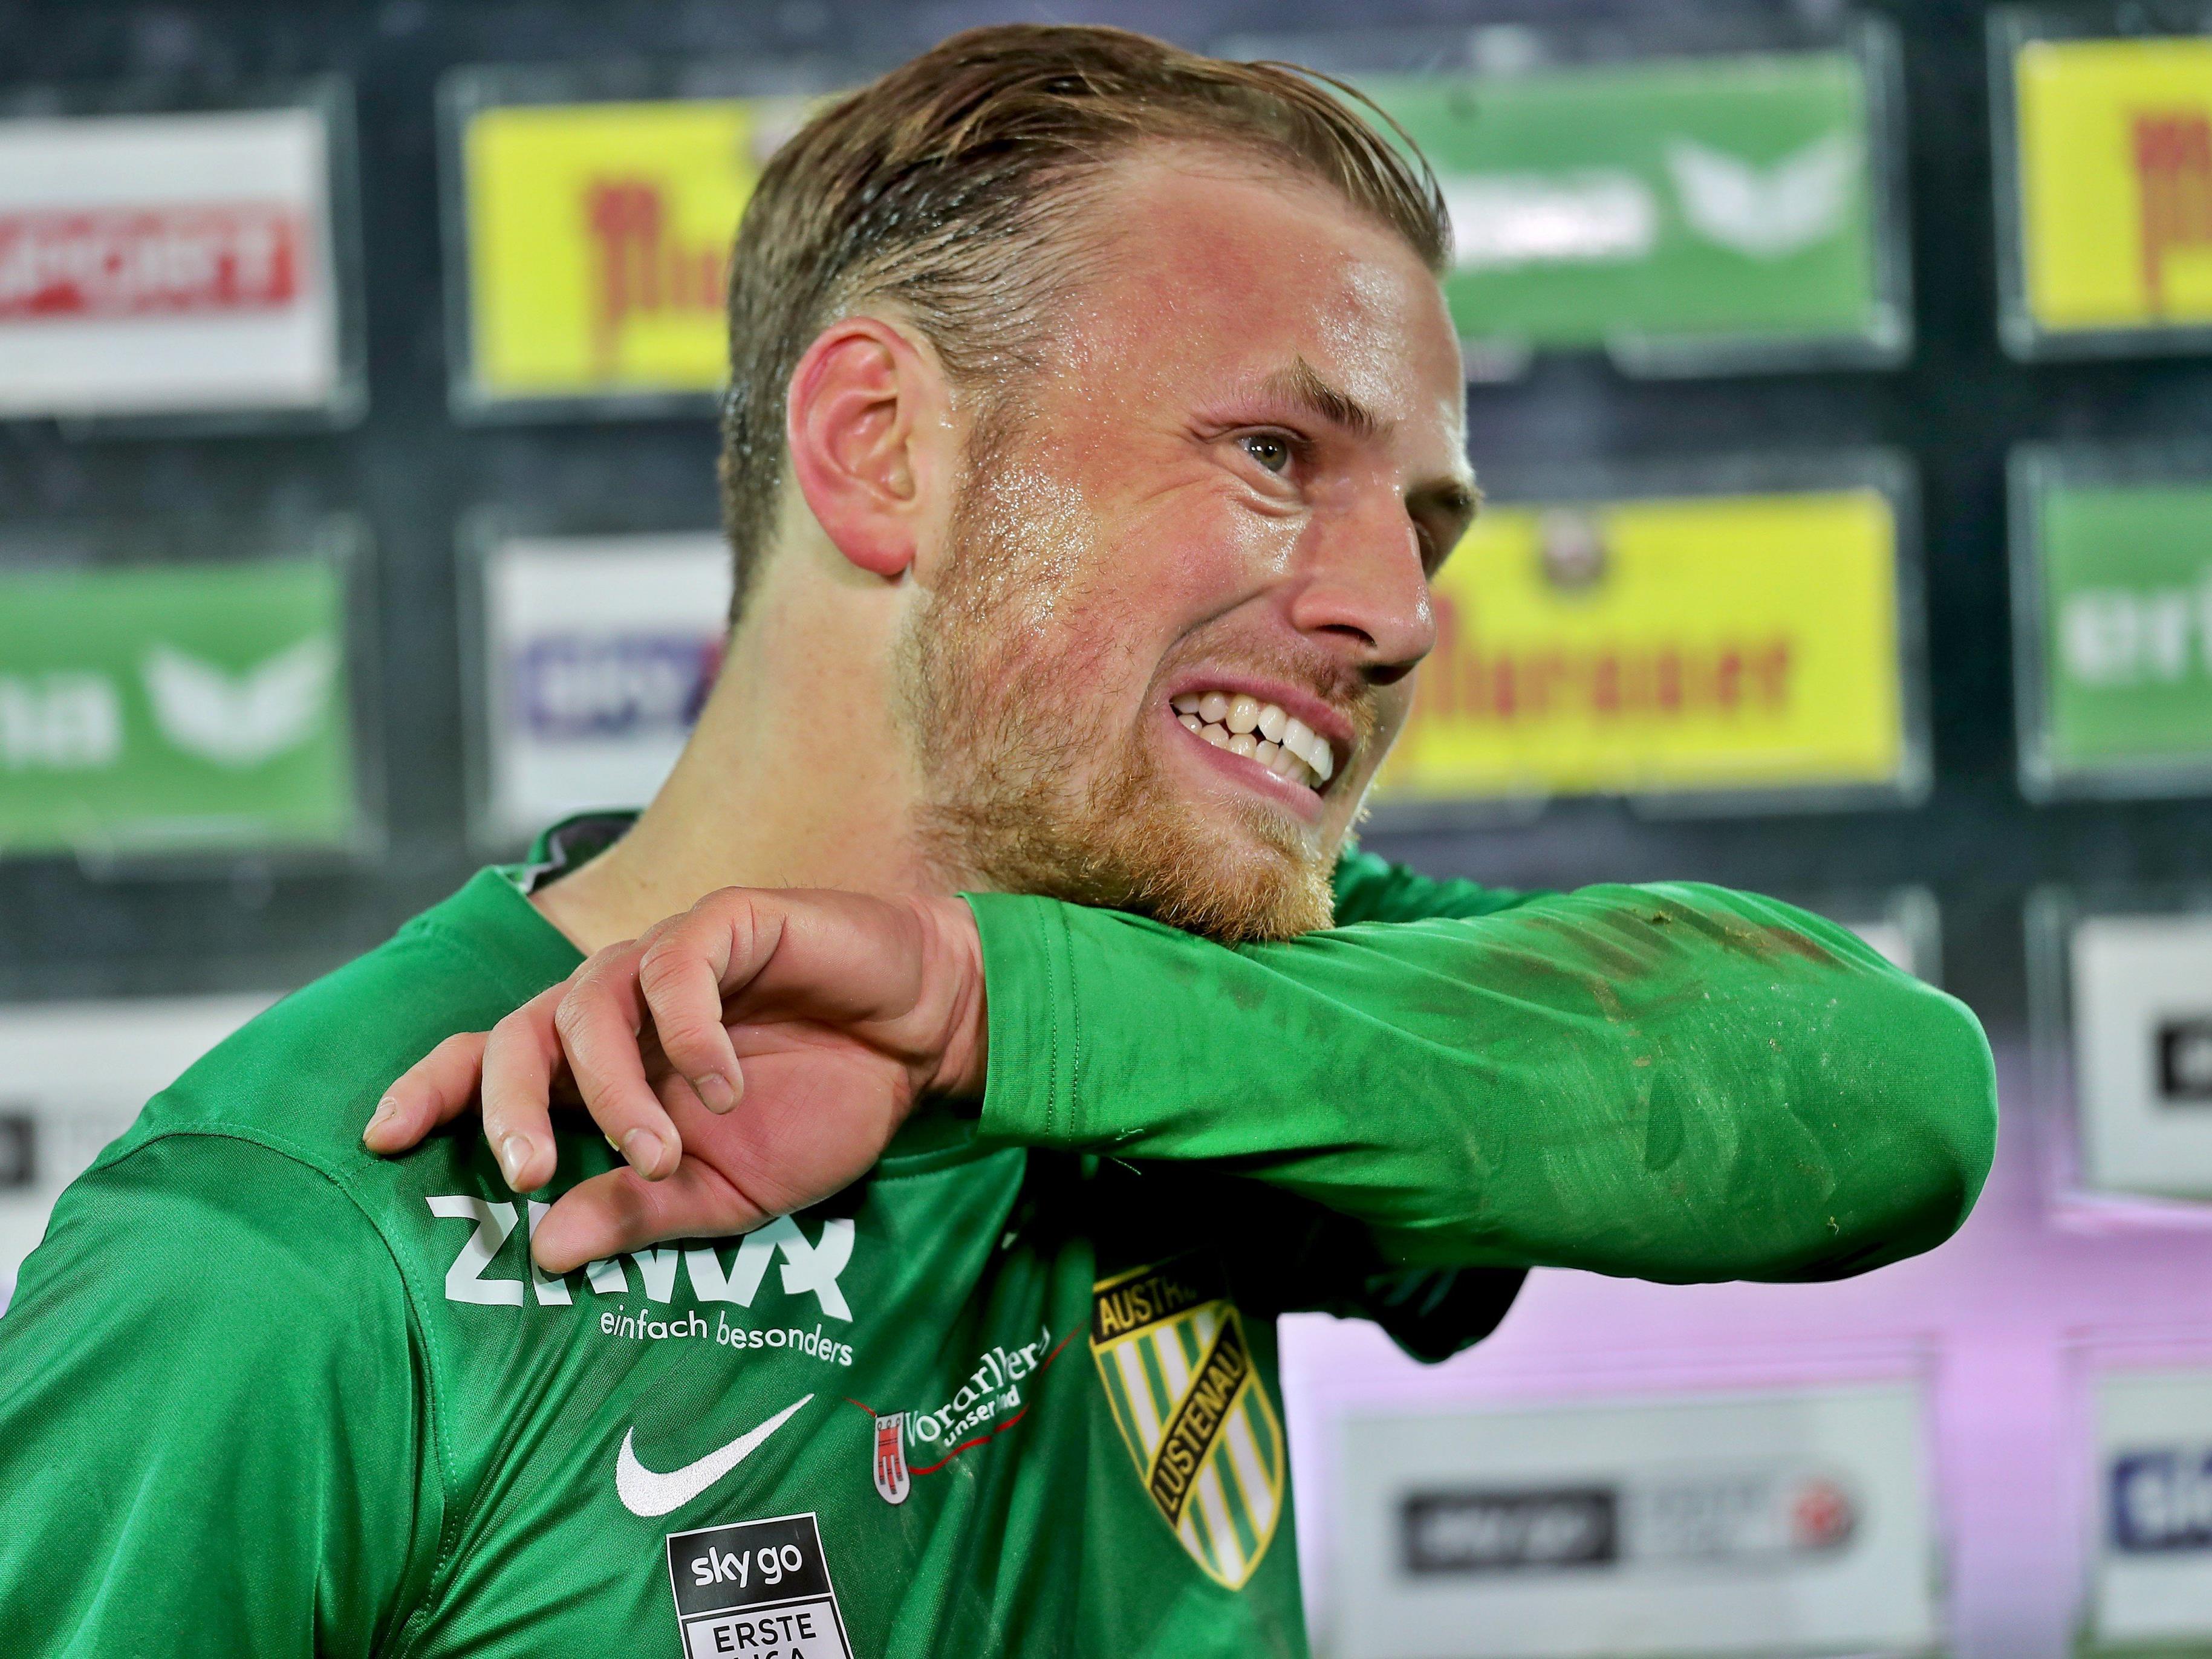 Der 24-jährige Deutsche unterschrieb beim Schlusslicht der Fußball-Bundesliga einen Dreijahresvertrag.